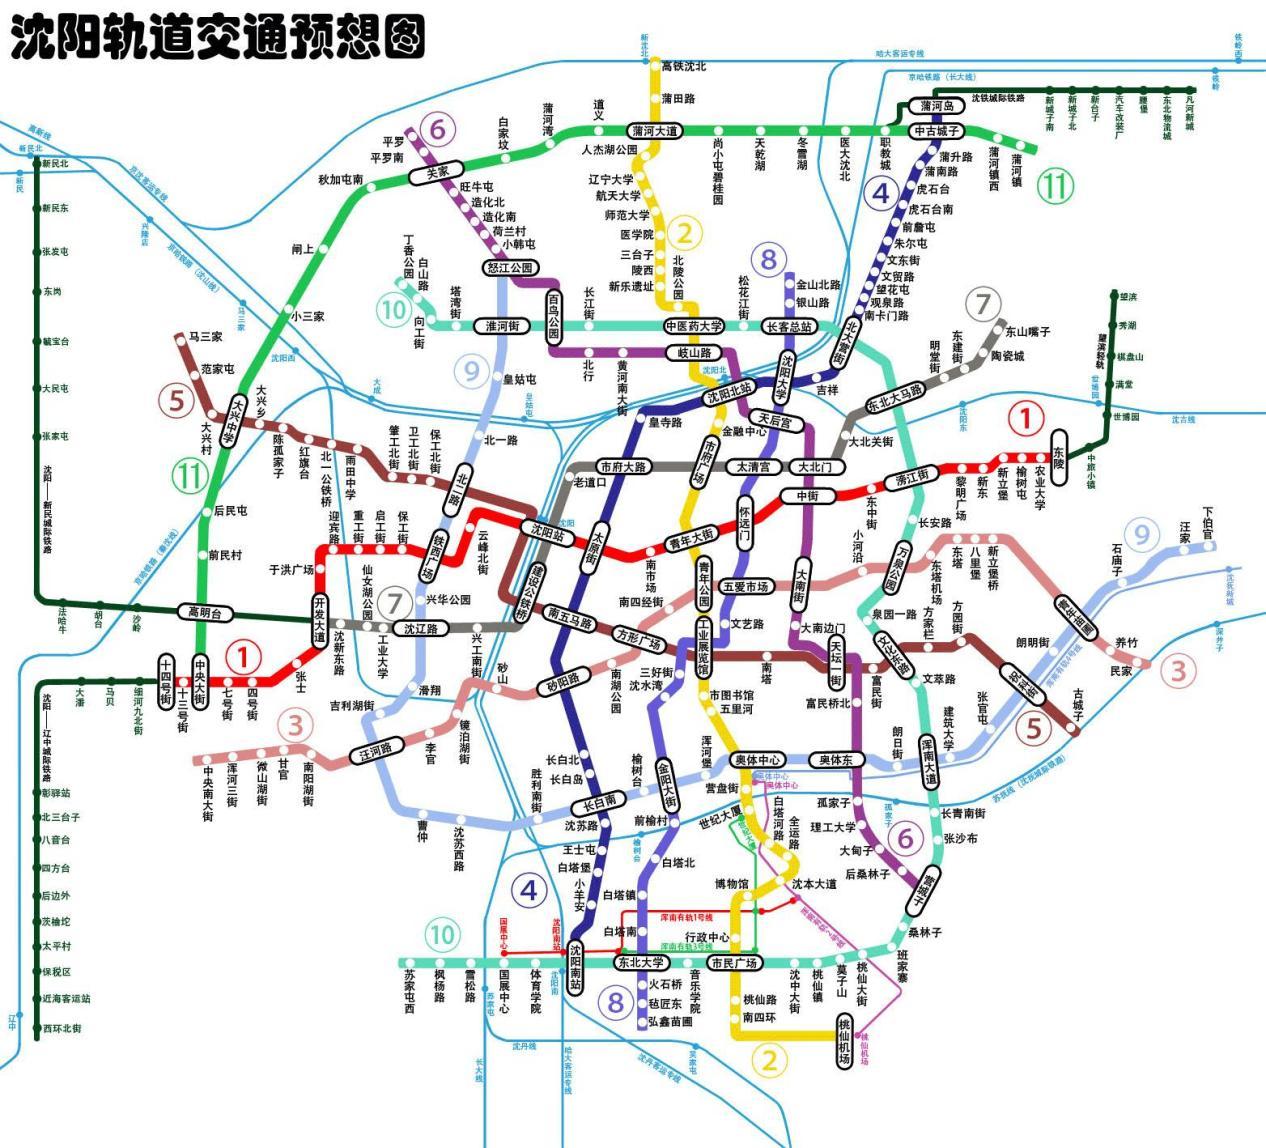 第二期的地铁4号线:途经沈阳南站,沈阳站,沈阳北站,浑南长白,二期工程